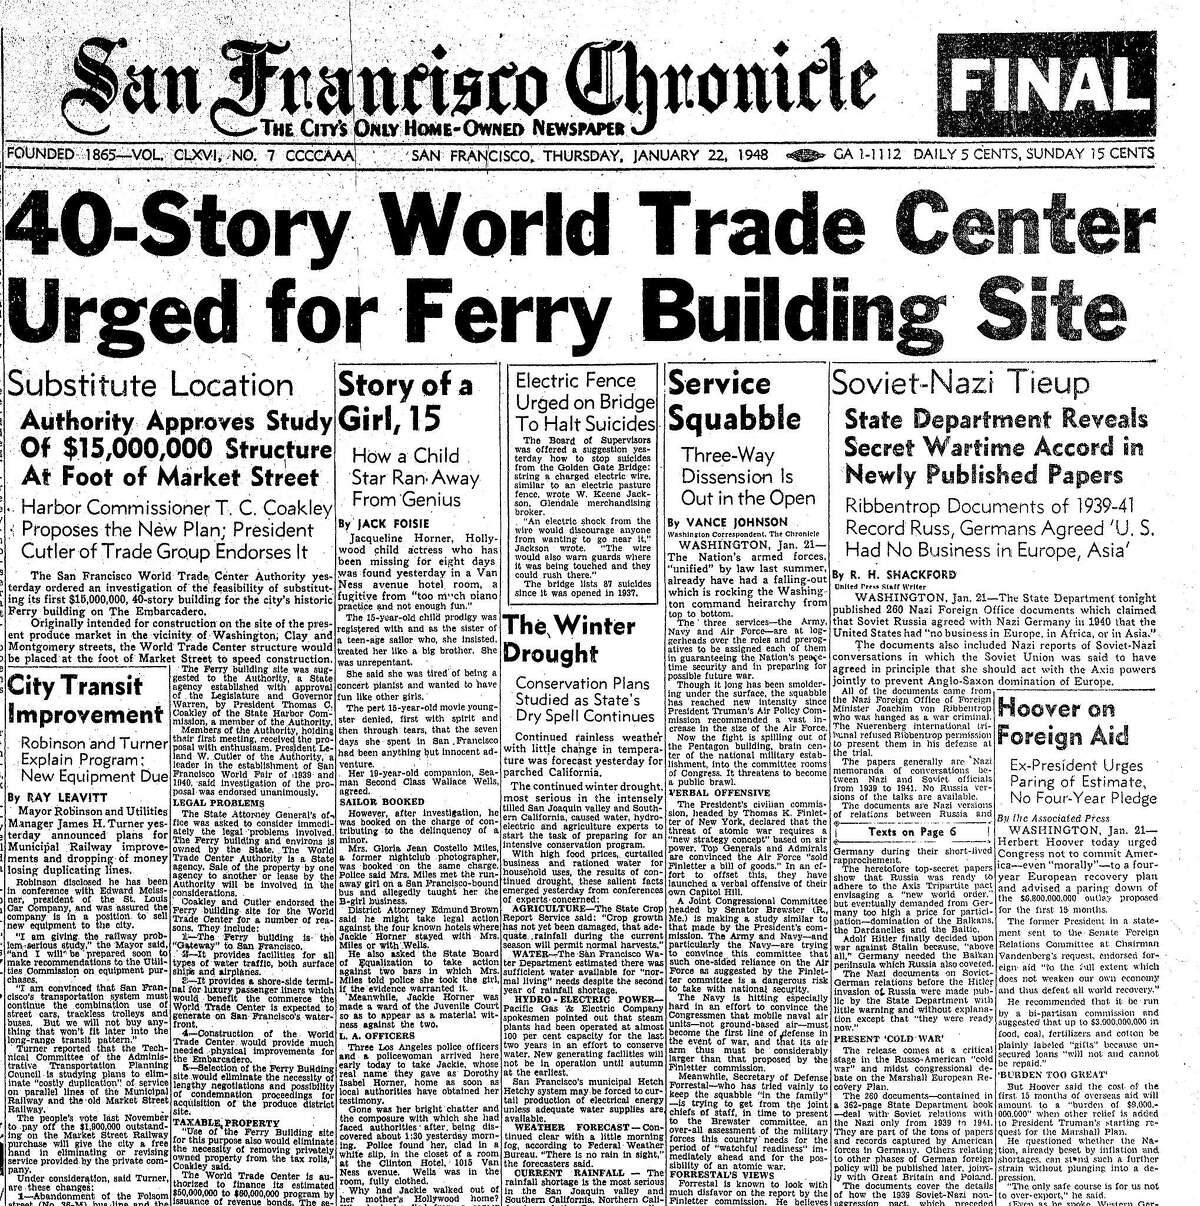 1948年1月22日的纪事报报道了拆除旧渡轮大楼的计划，并用一座40层的世界贸易中心大楼取而代之